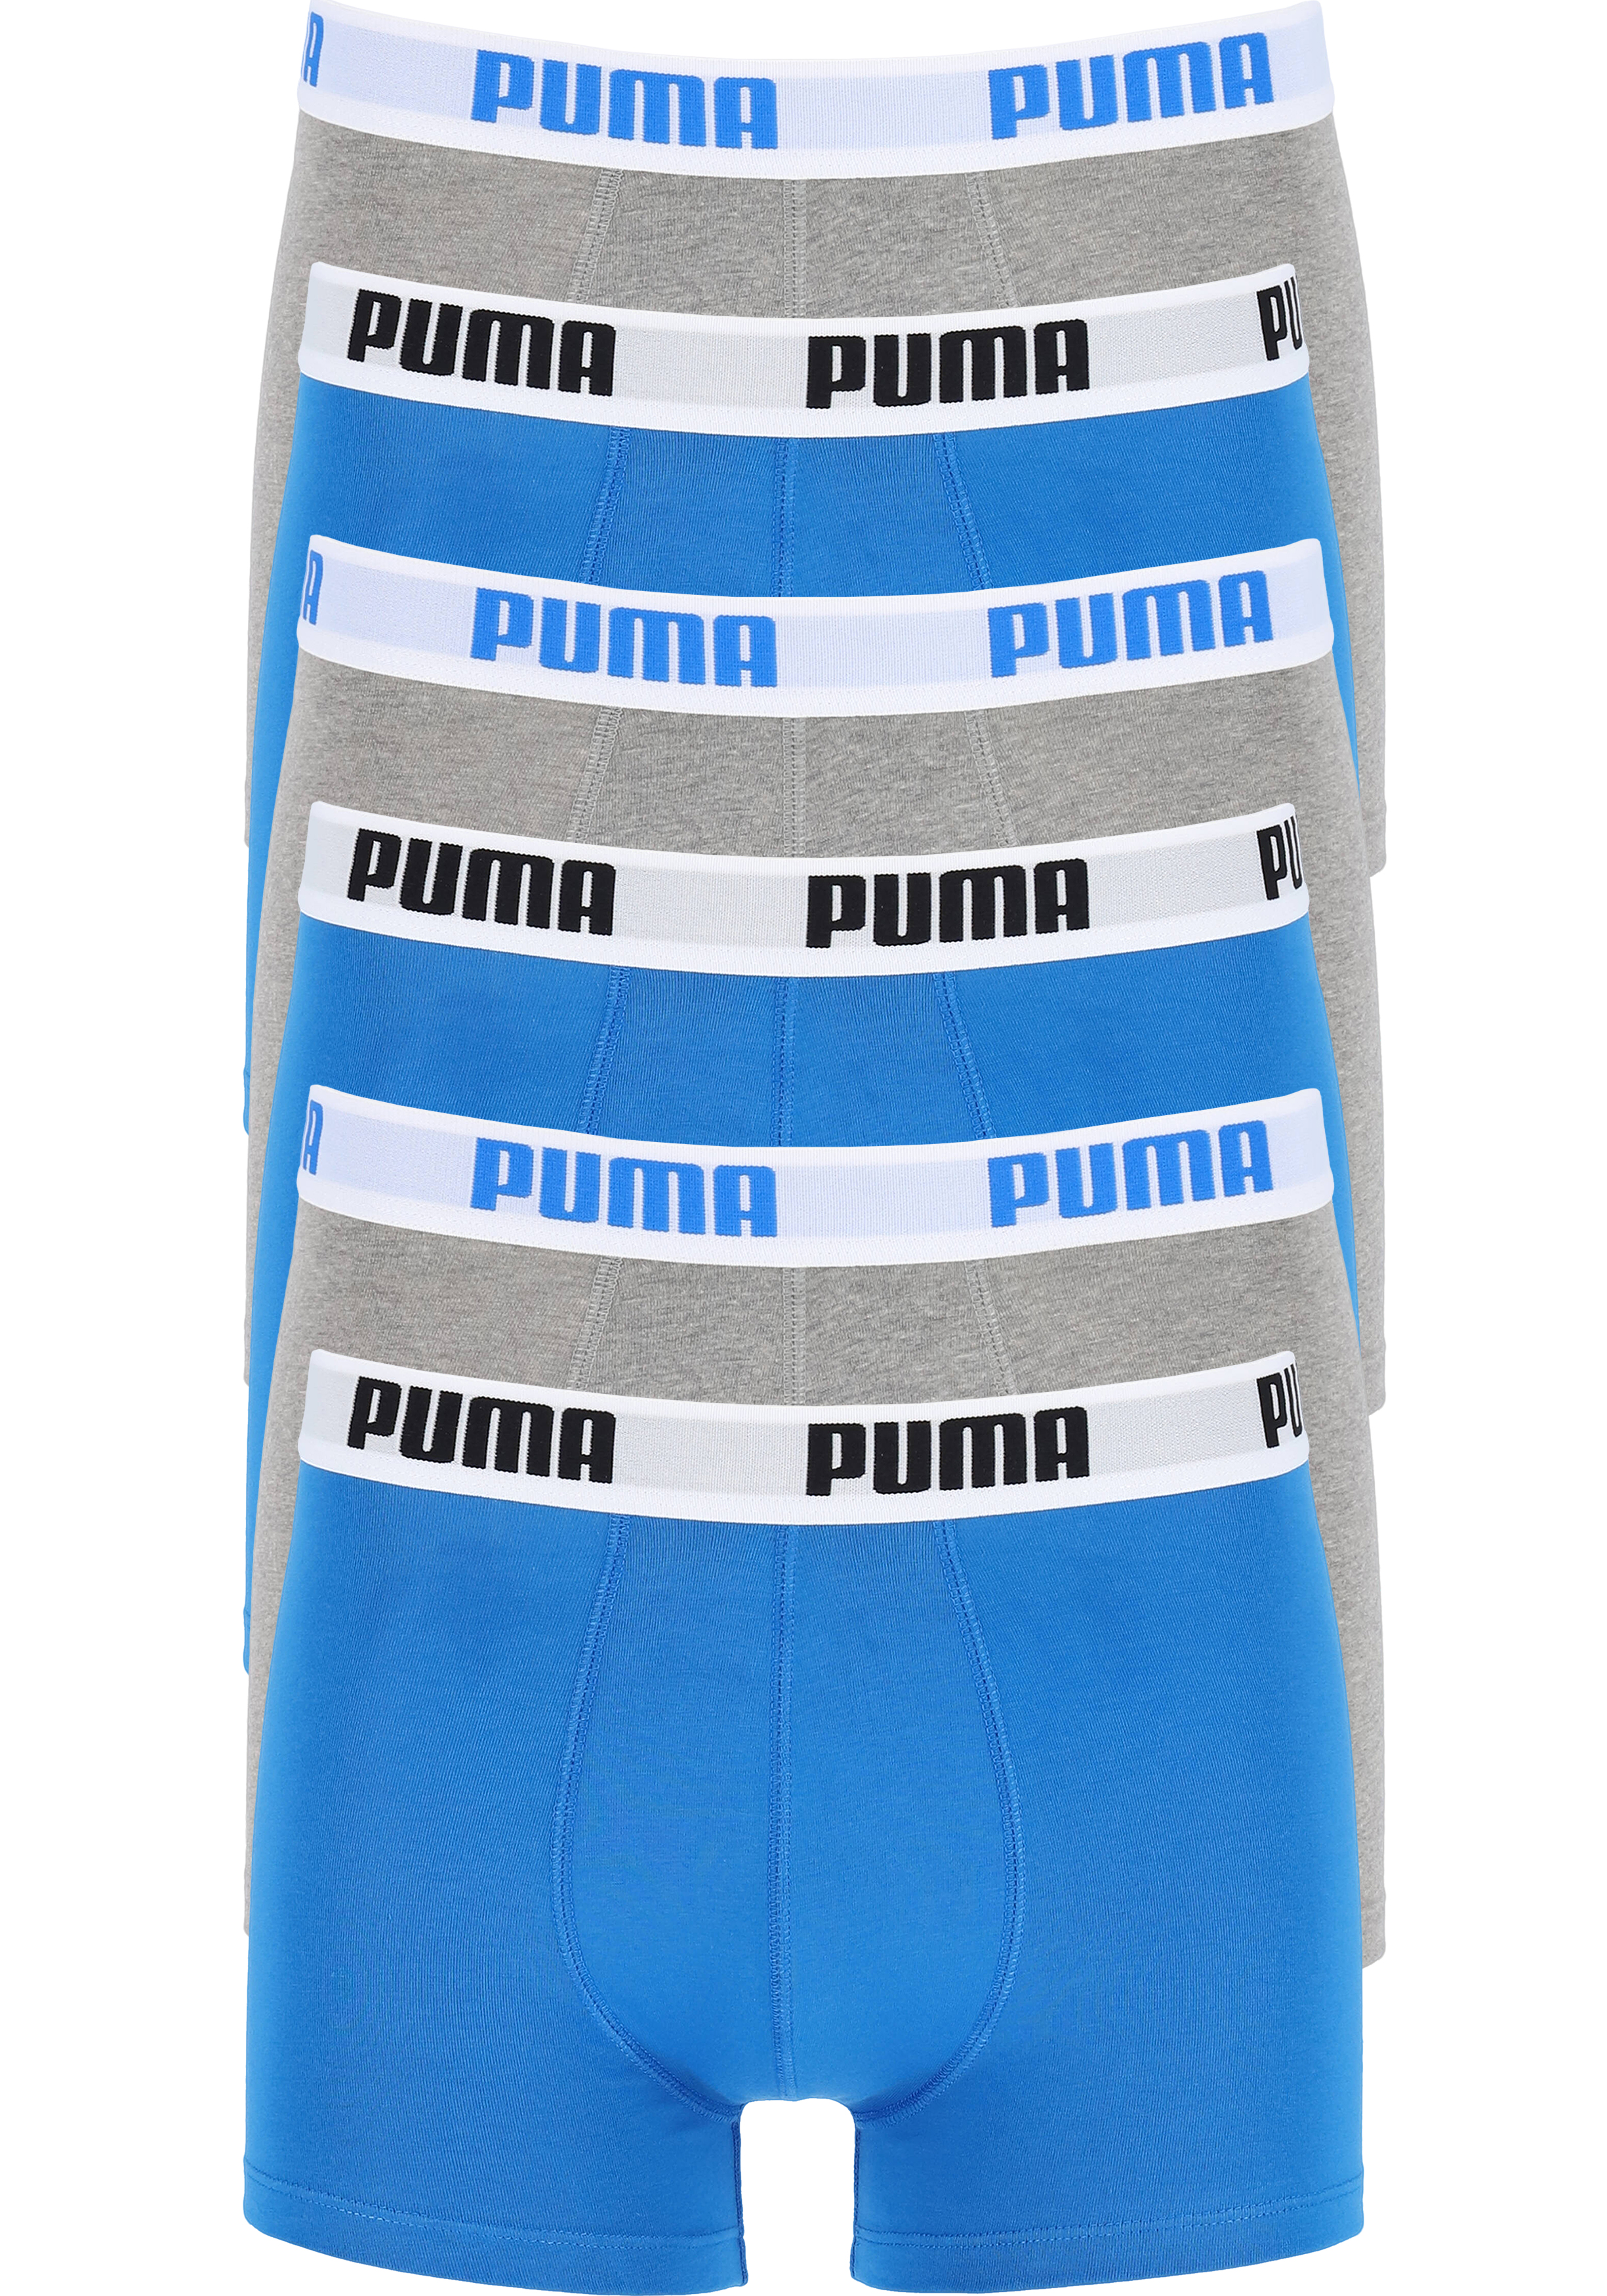 Puma Boxer heren (6-pack), blauw en grijs - DEALS: bestel artikelen van topmerken met korting